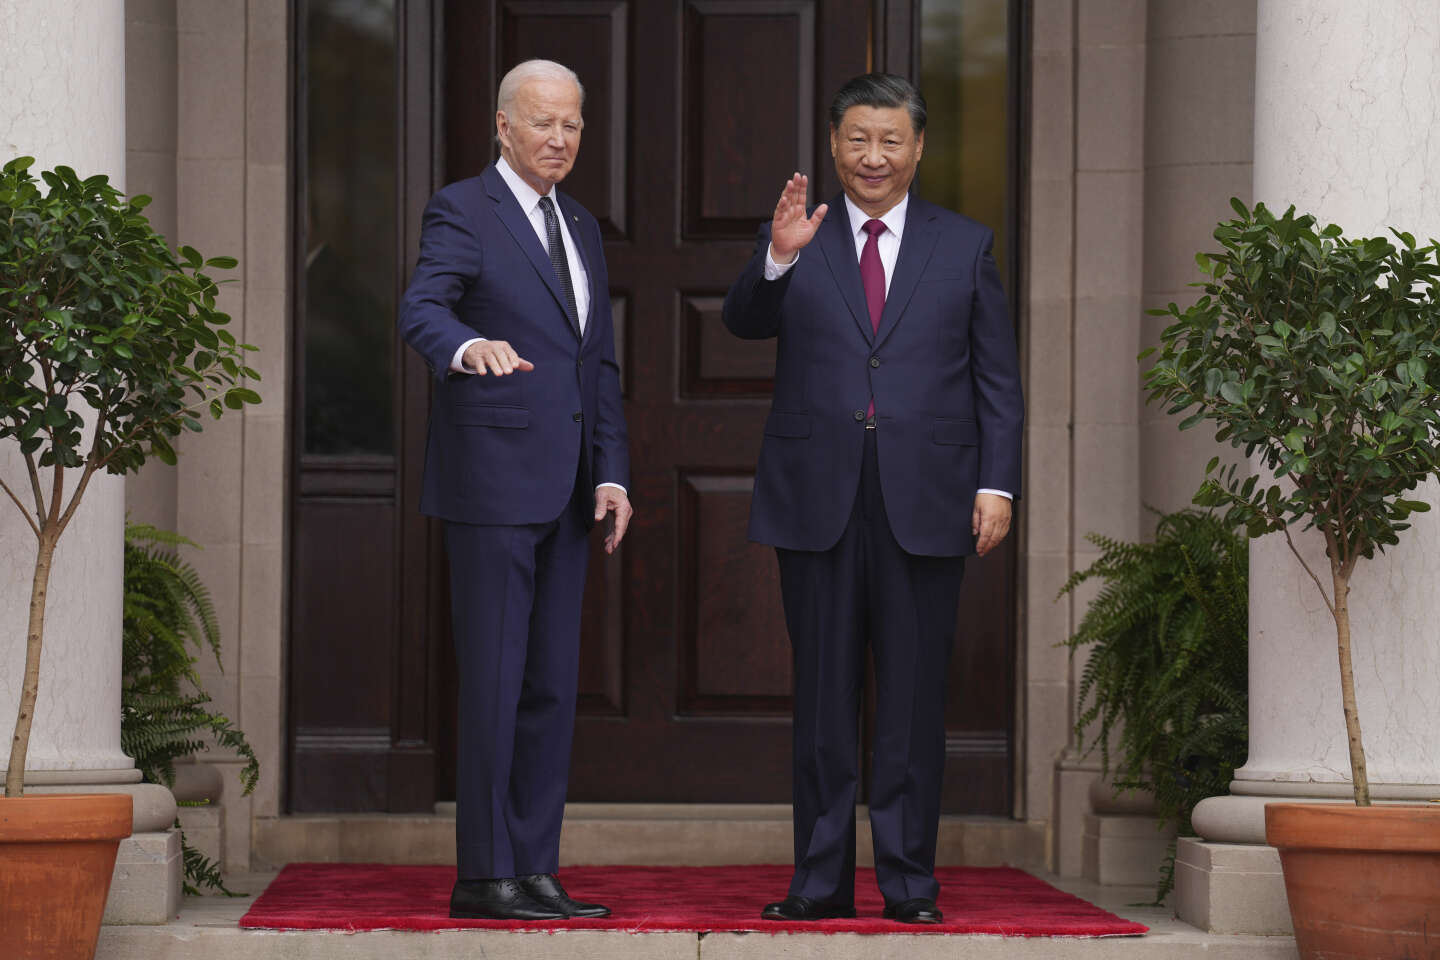 “Between Joe Biden and Xi Jinping, the tone has changed.”